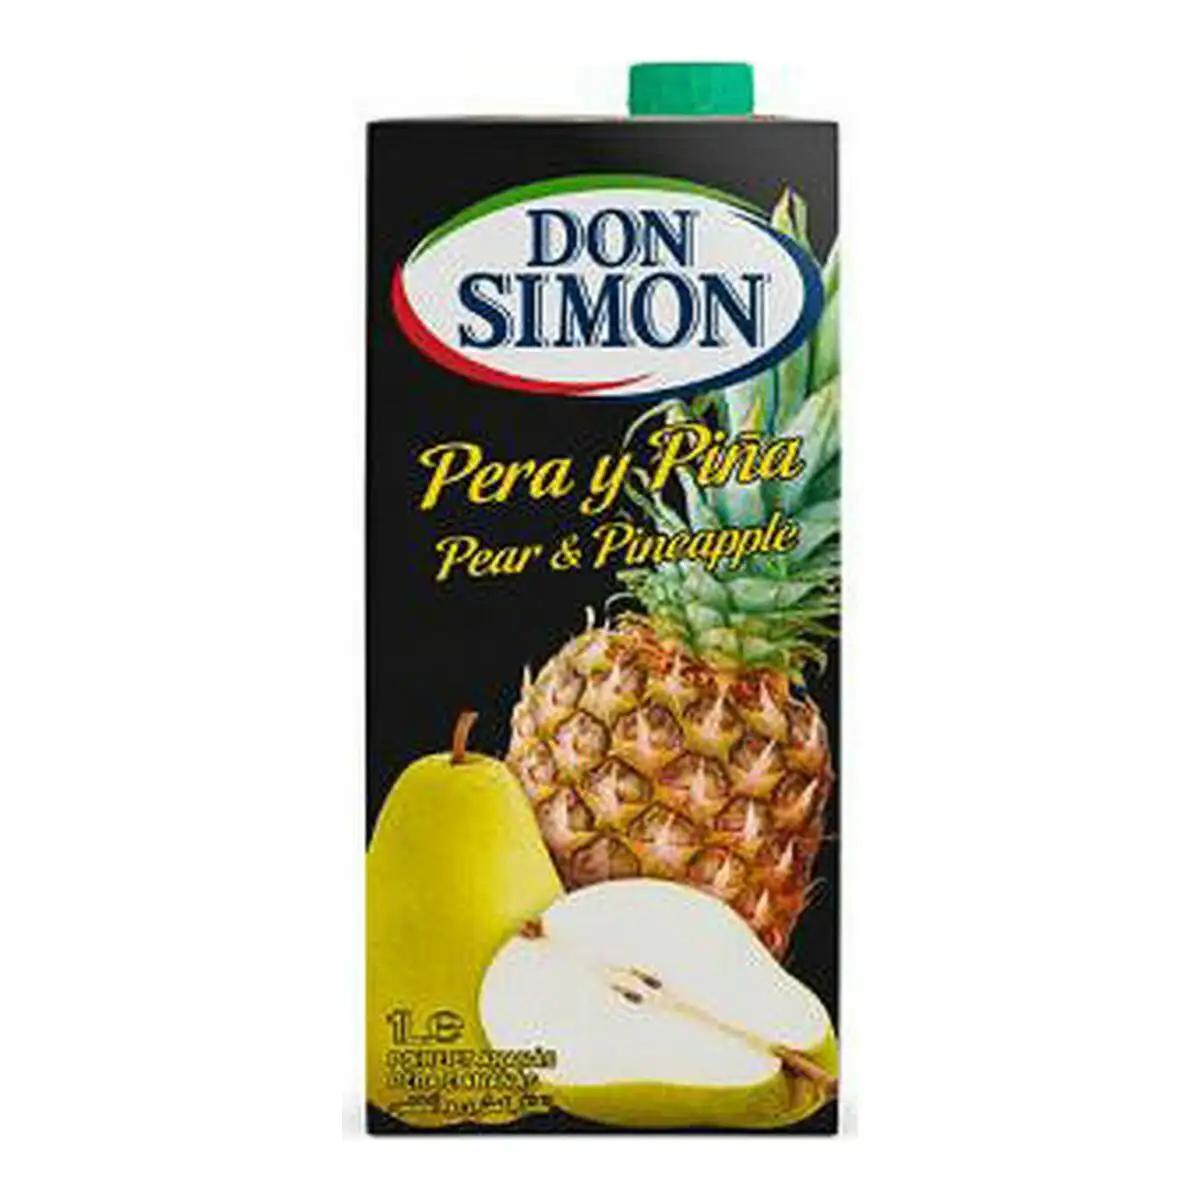 Nectar don simon ananas pera 1 l _3702. DIAYTAR SENEGAL - Votre Plateforme Shopping de Confiance. Naviguez à travers nos rayons et choisissez des produits fiables qui répondent à vos besoins quotidiens.